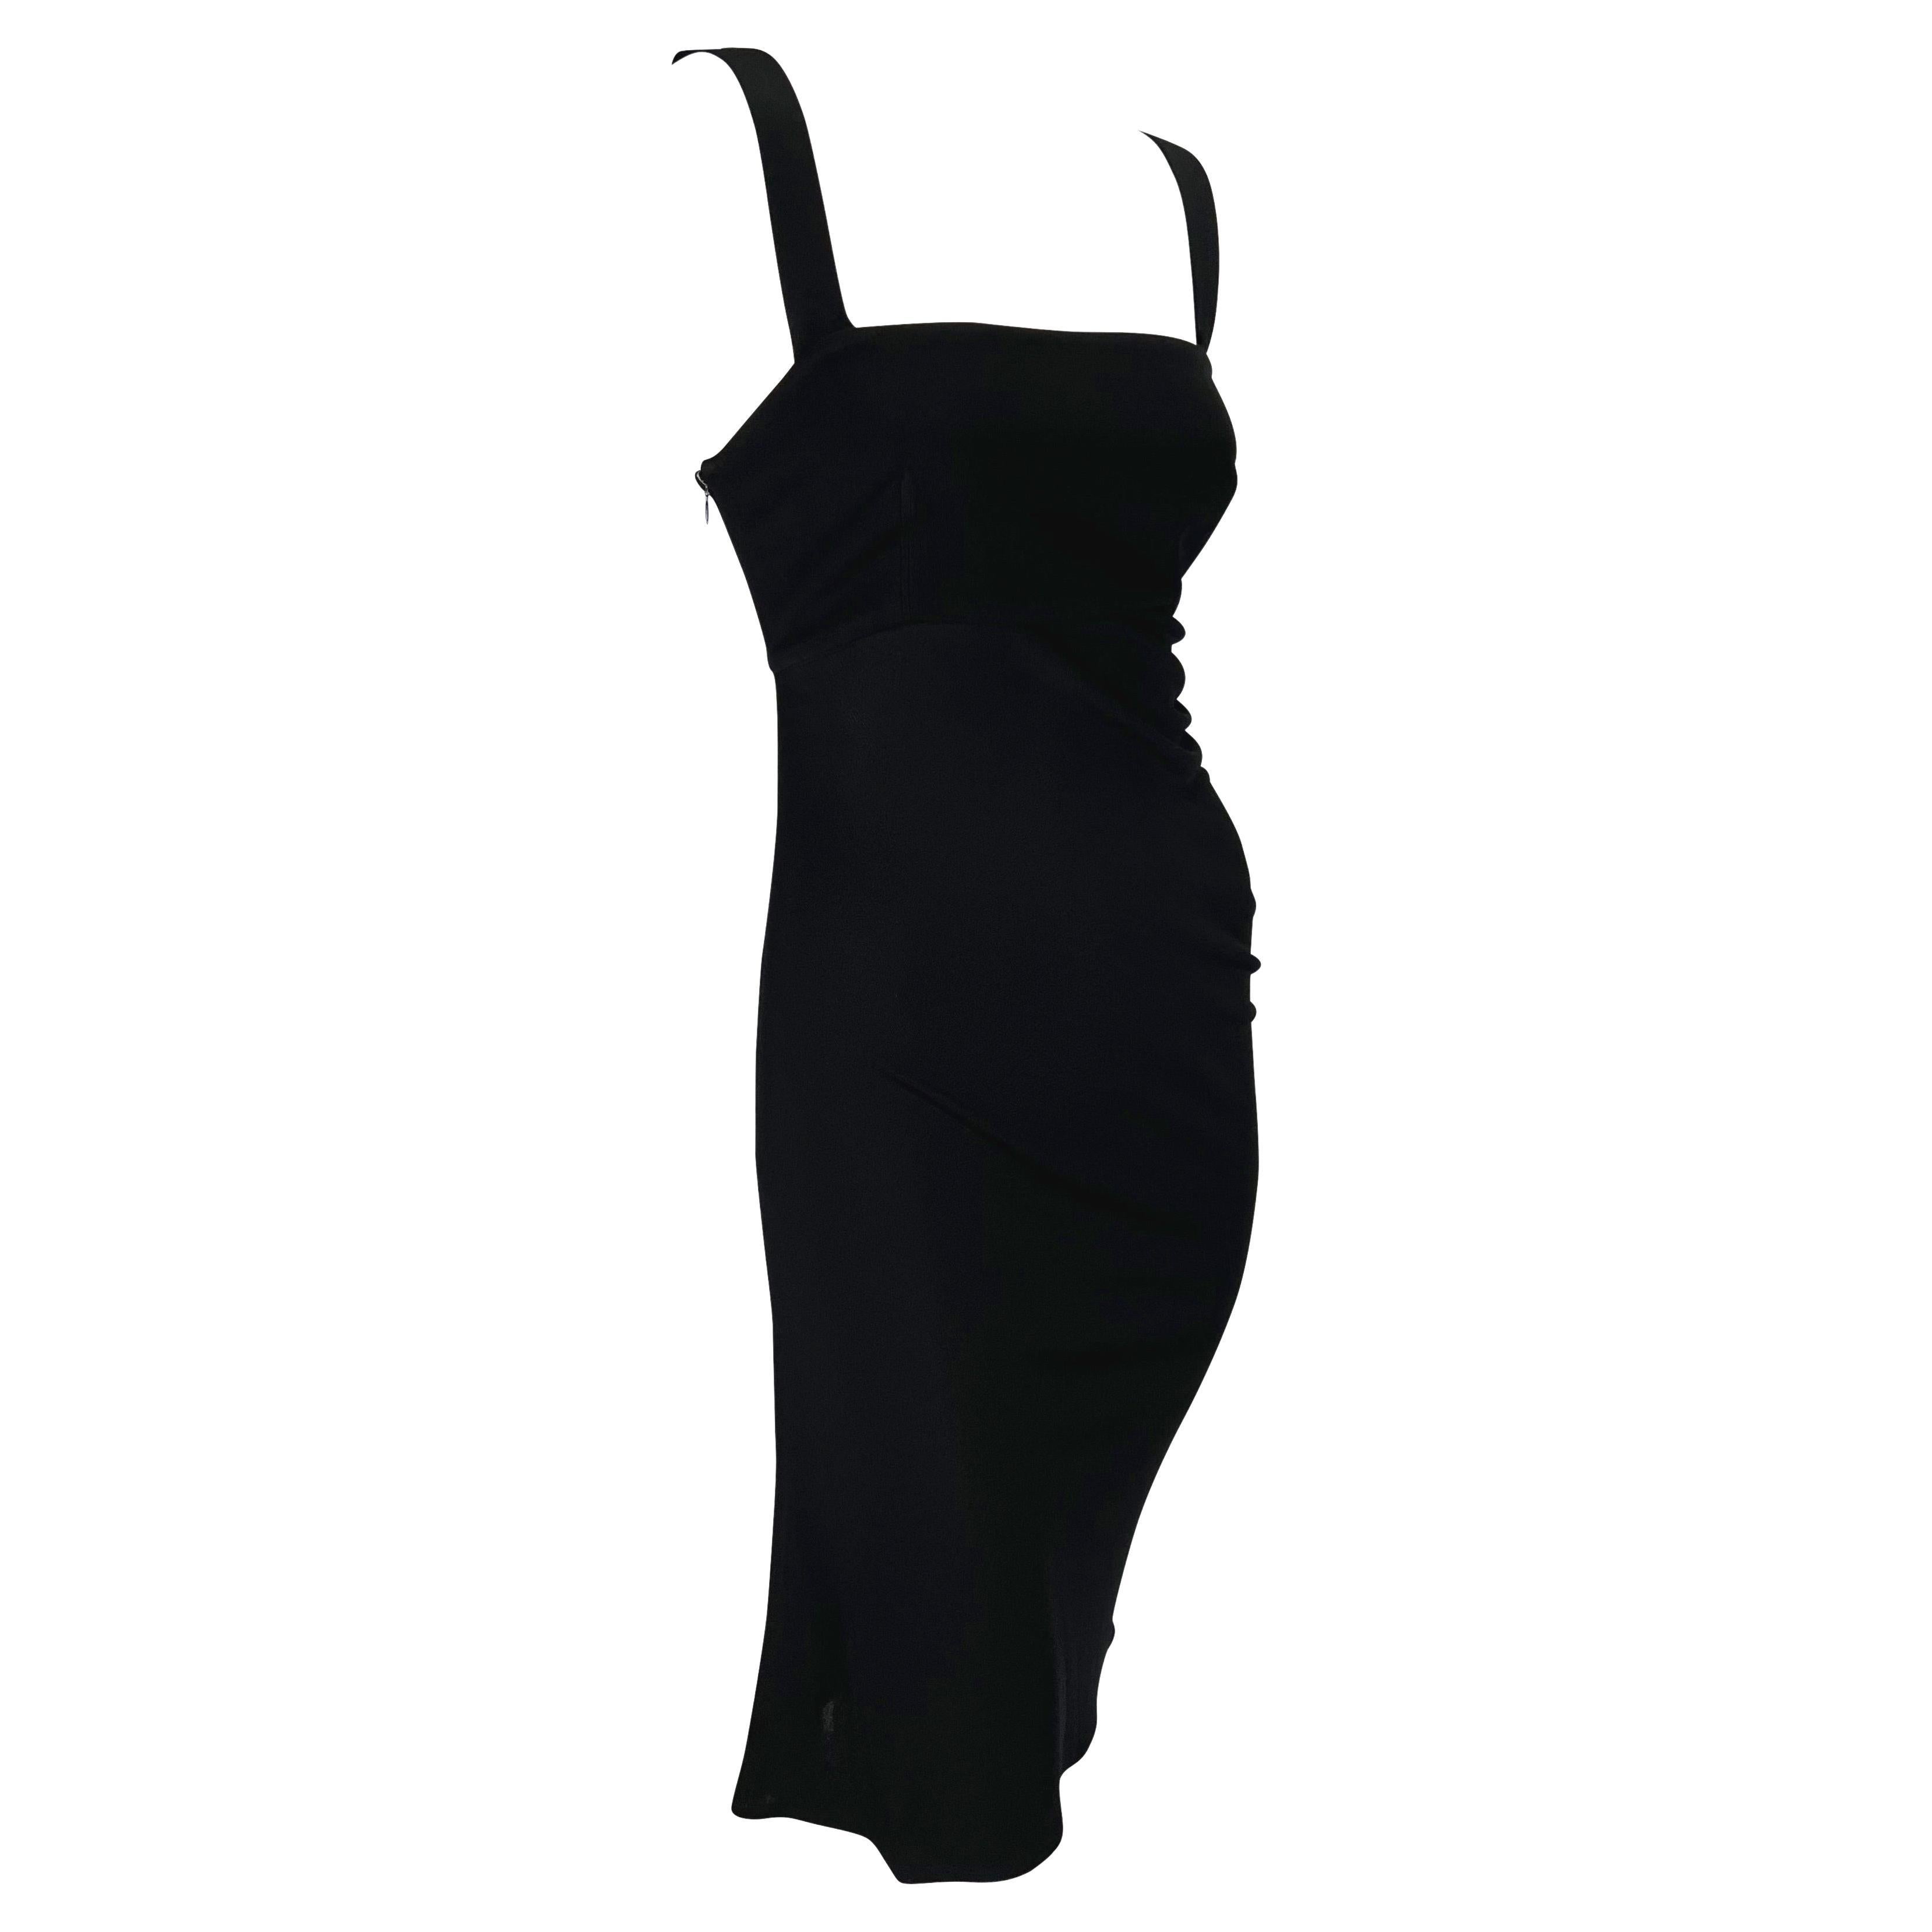 Petite robe noire asymétrique Gianni Versace Couture, A/H 1997 Pour femmes en vente